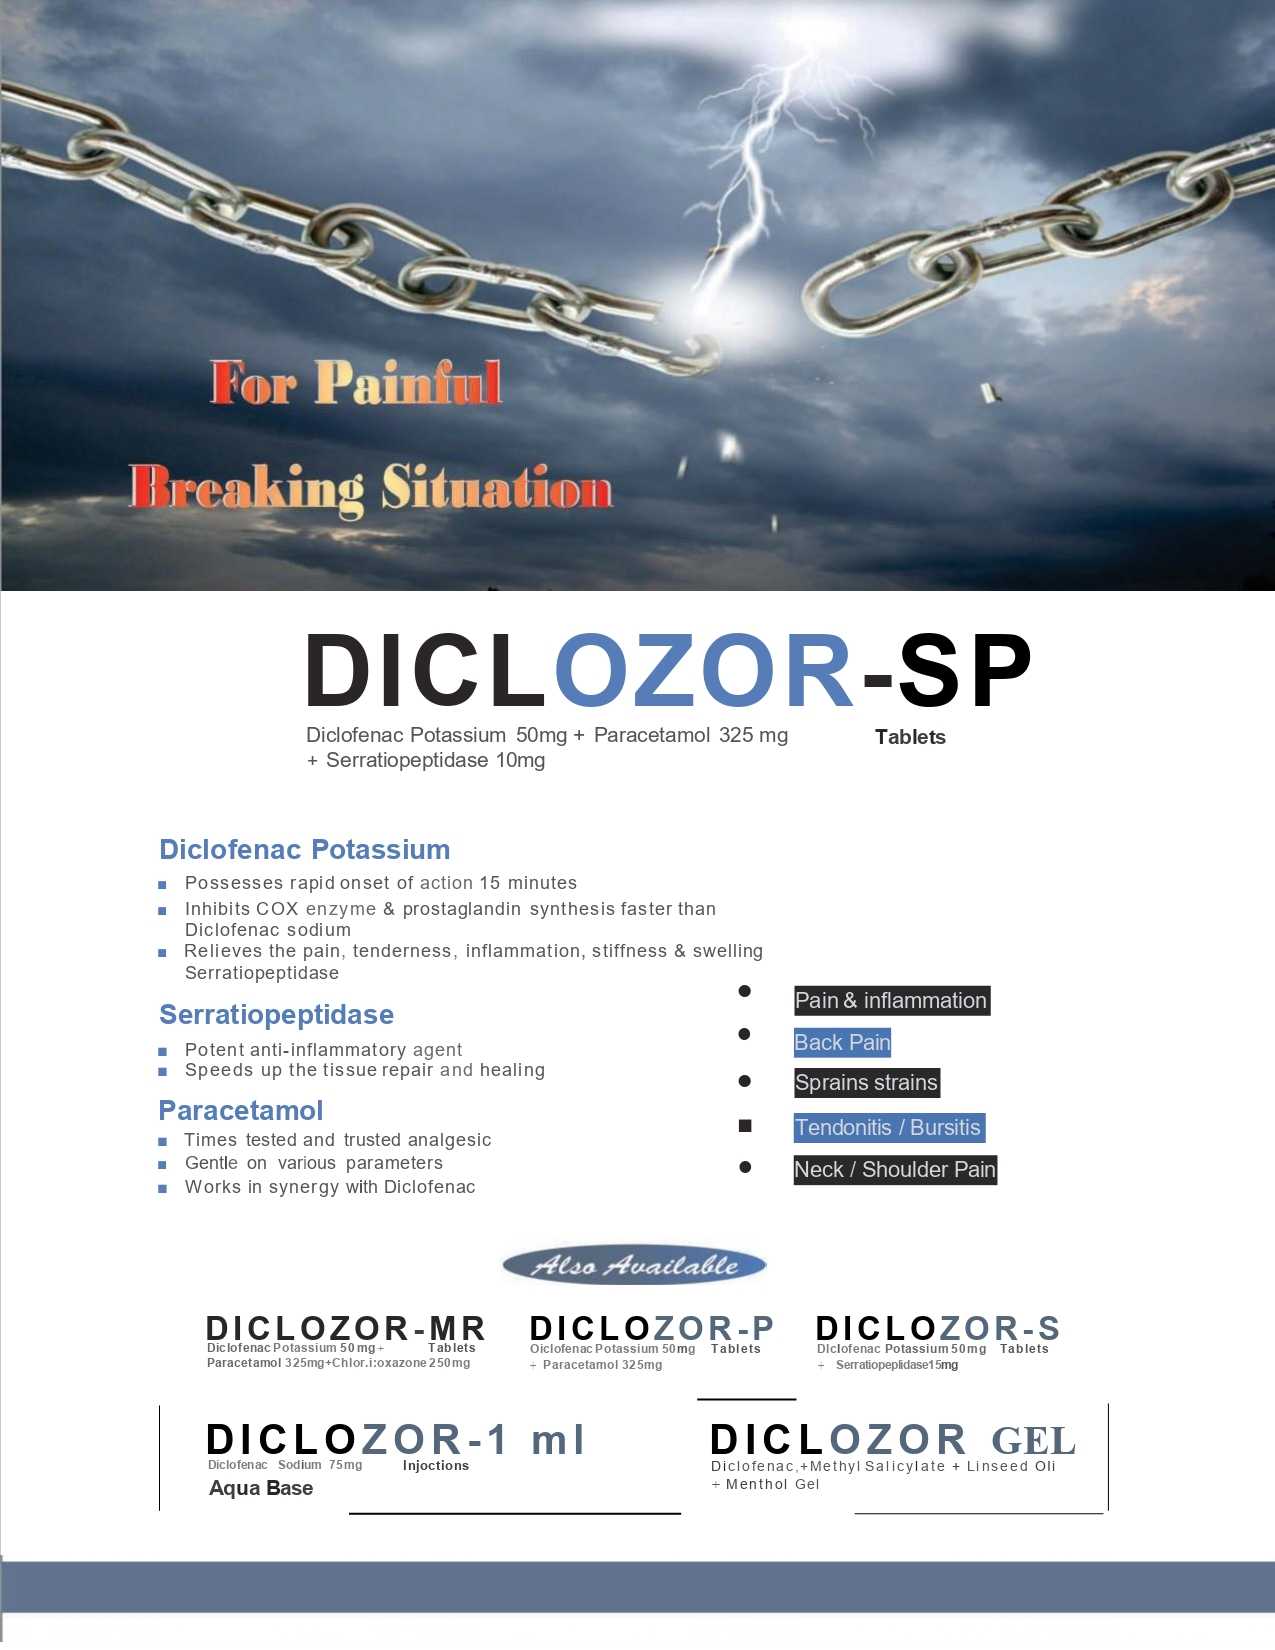 Diclozor-1ml